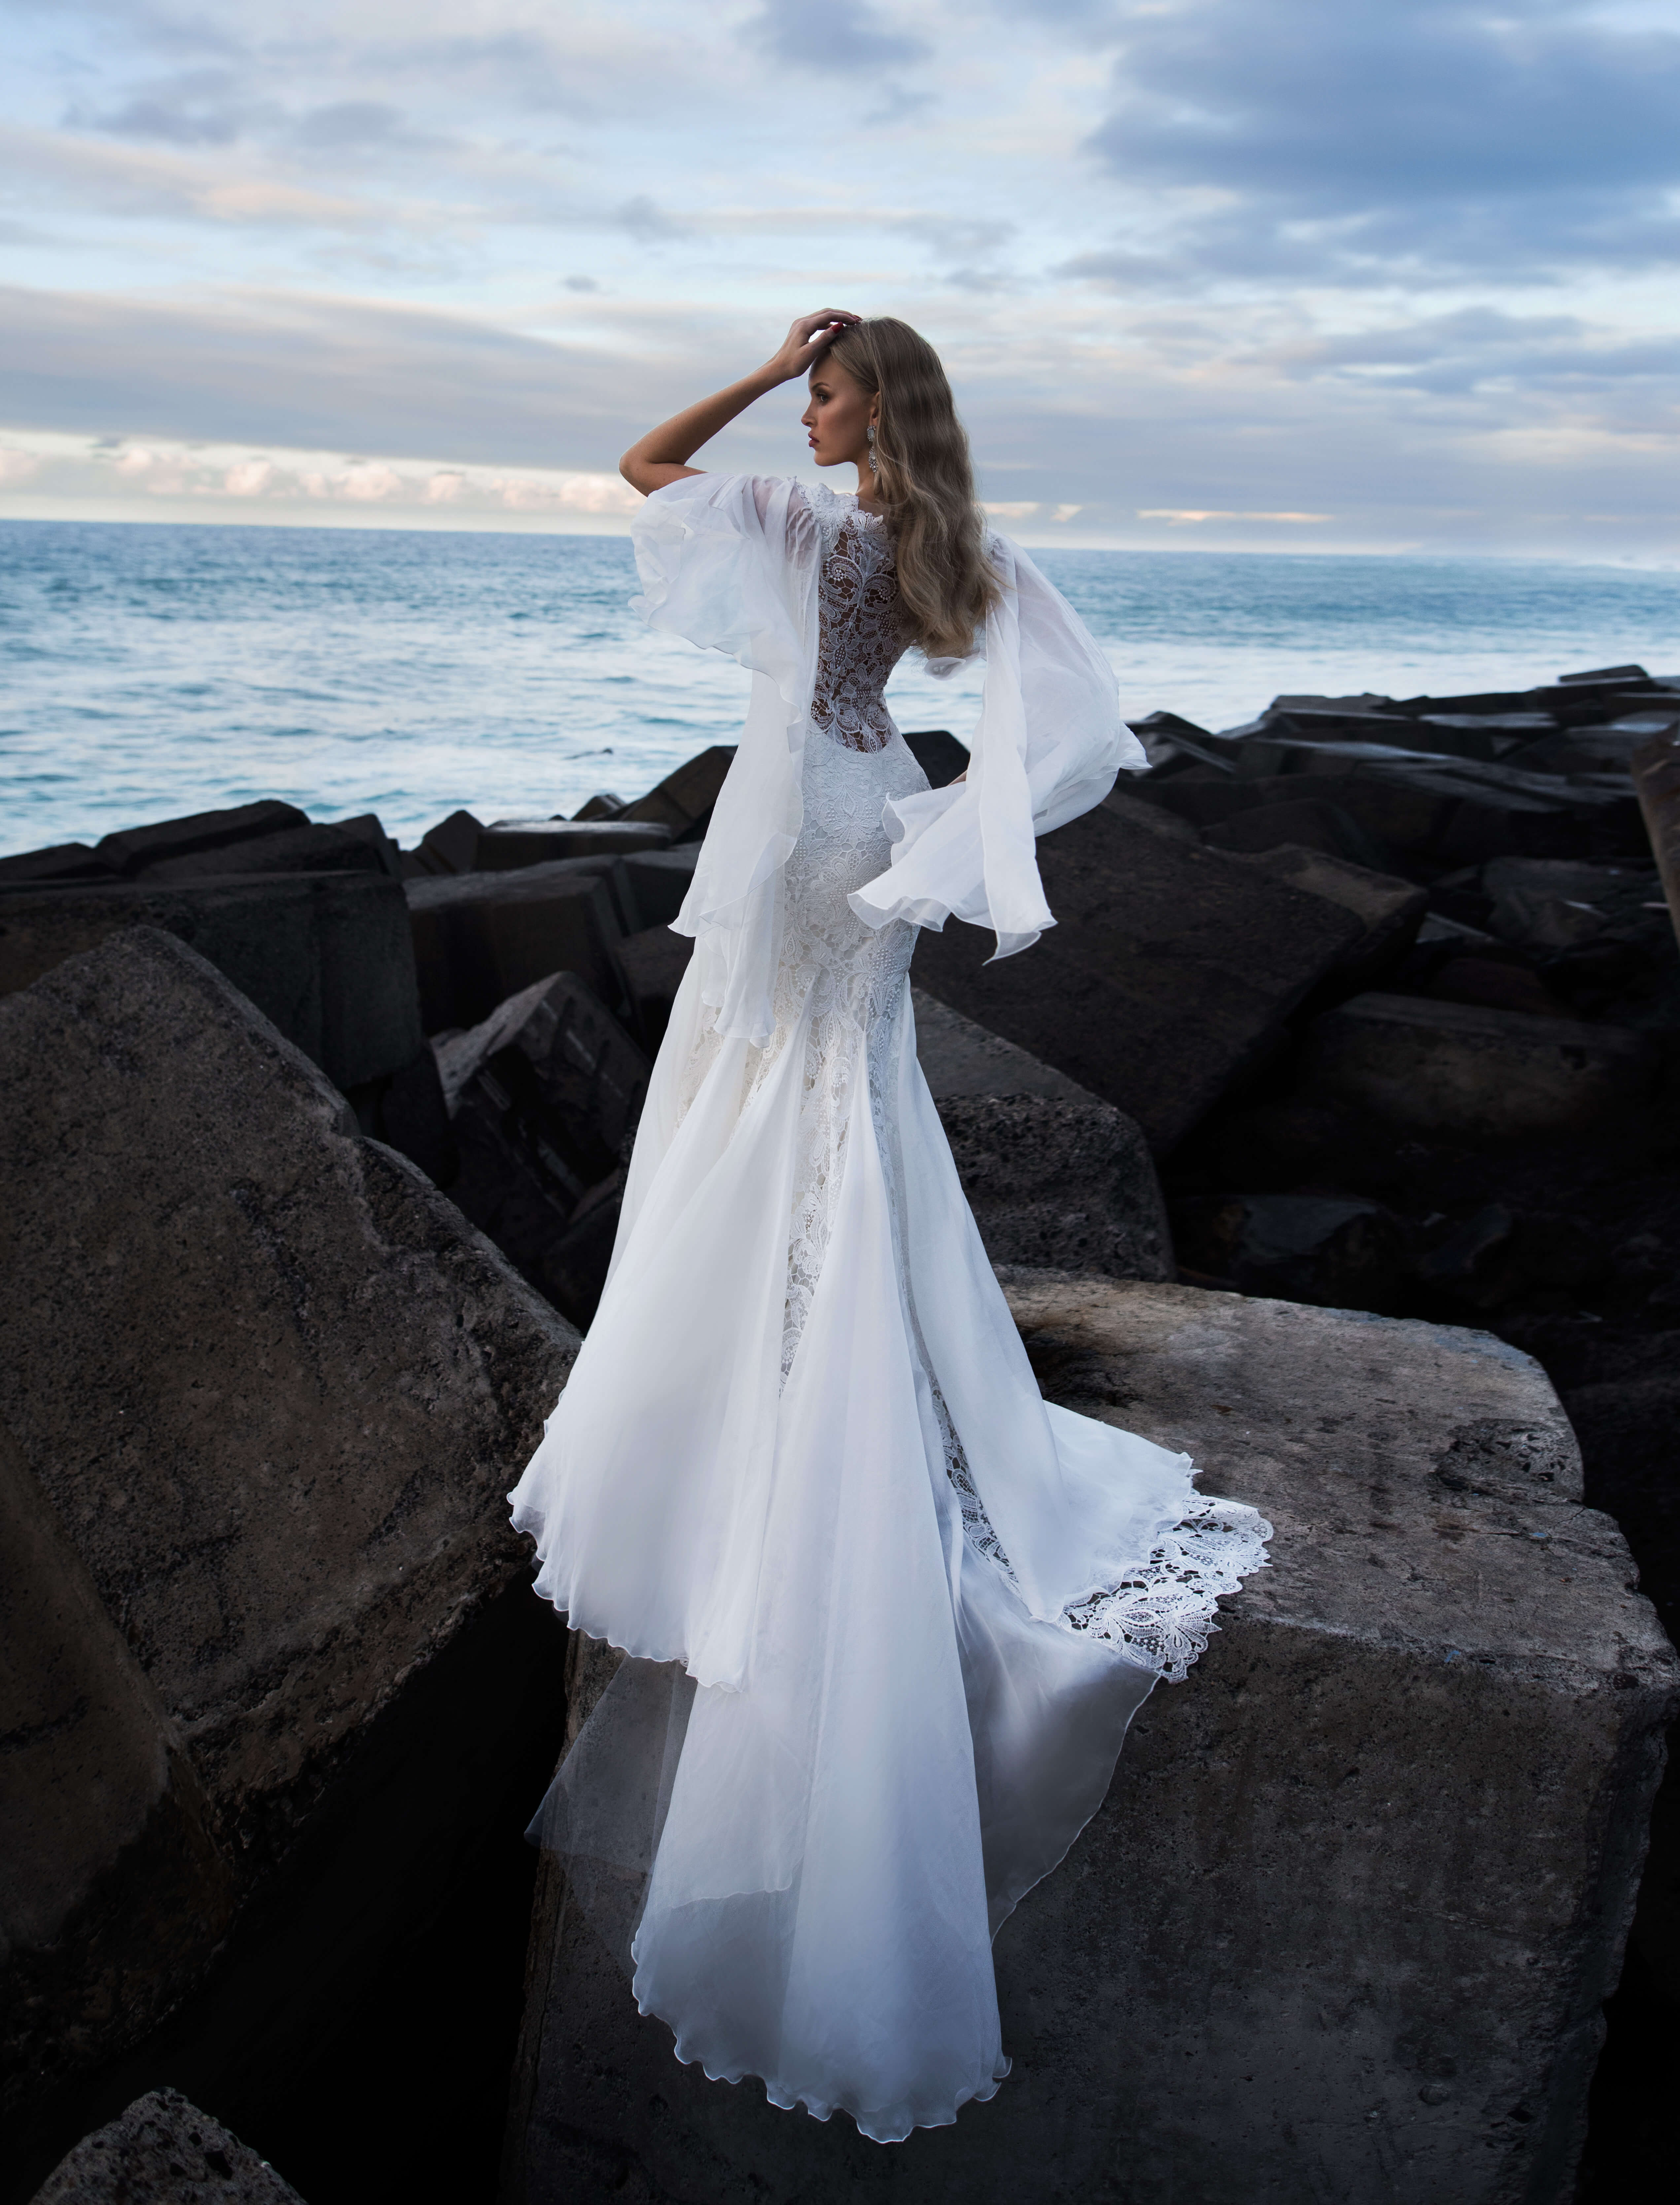 Купить свадебное платье «Блэйт» Бламмо Биамо из коллекции 2019 года в Казани